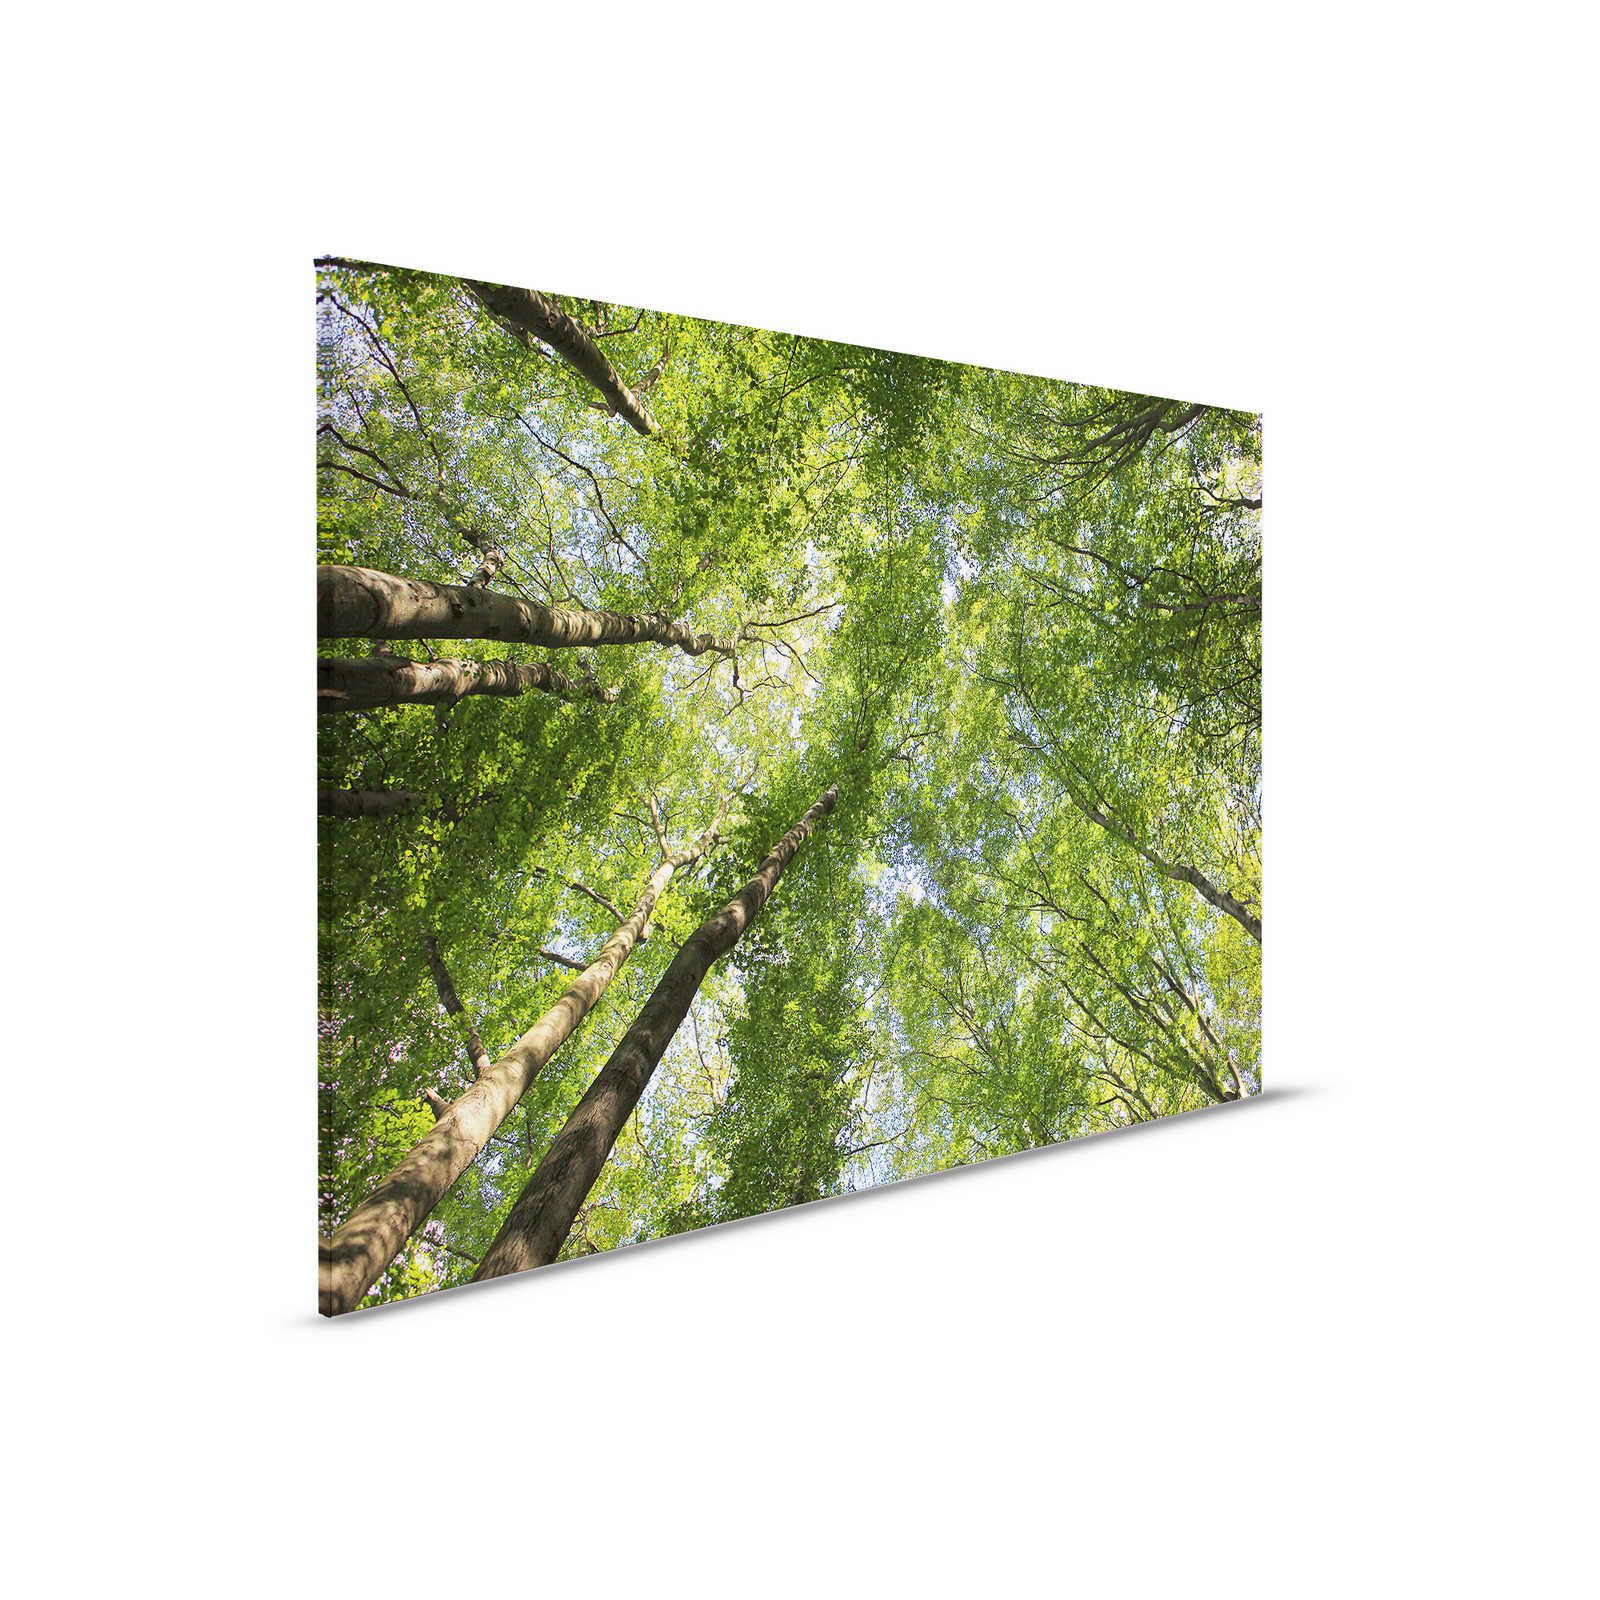 Quadro su tela con cime di foreste decidue - 0,90 m x 0,60 m
